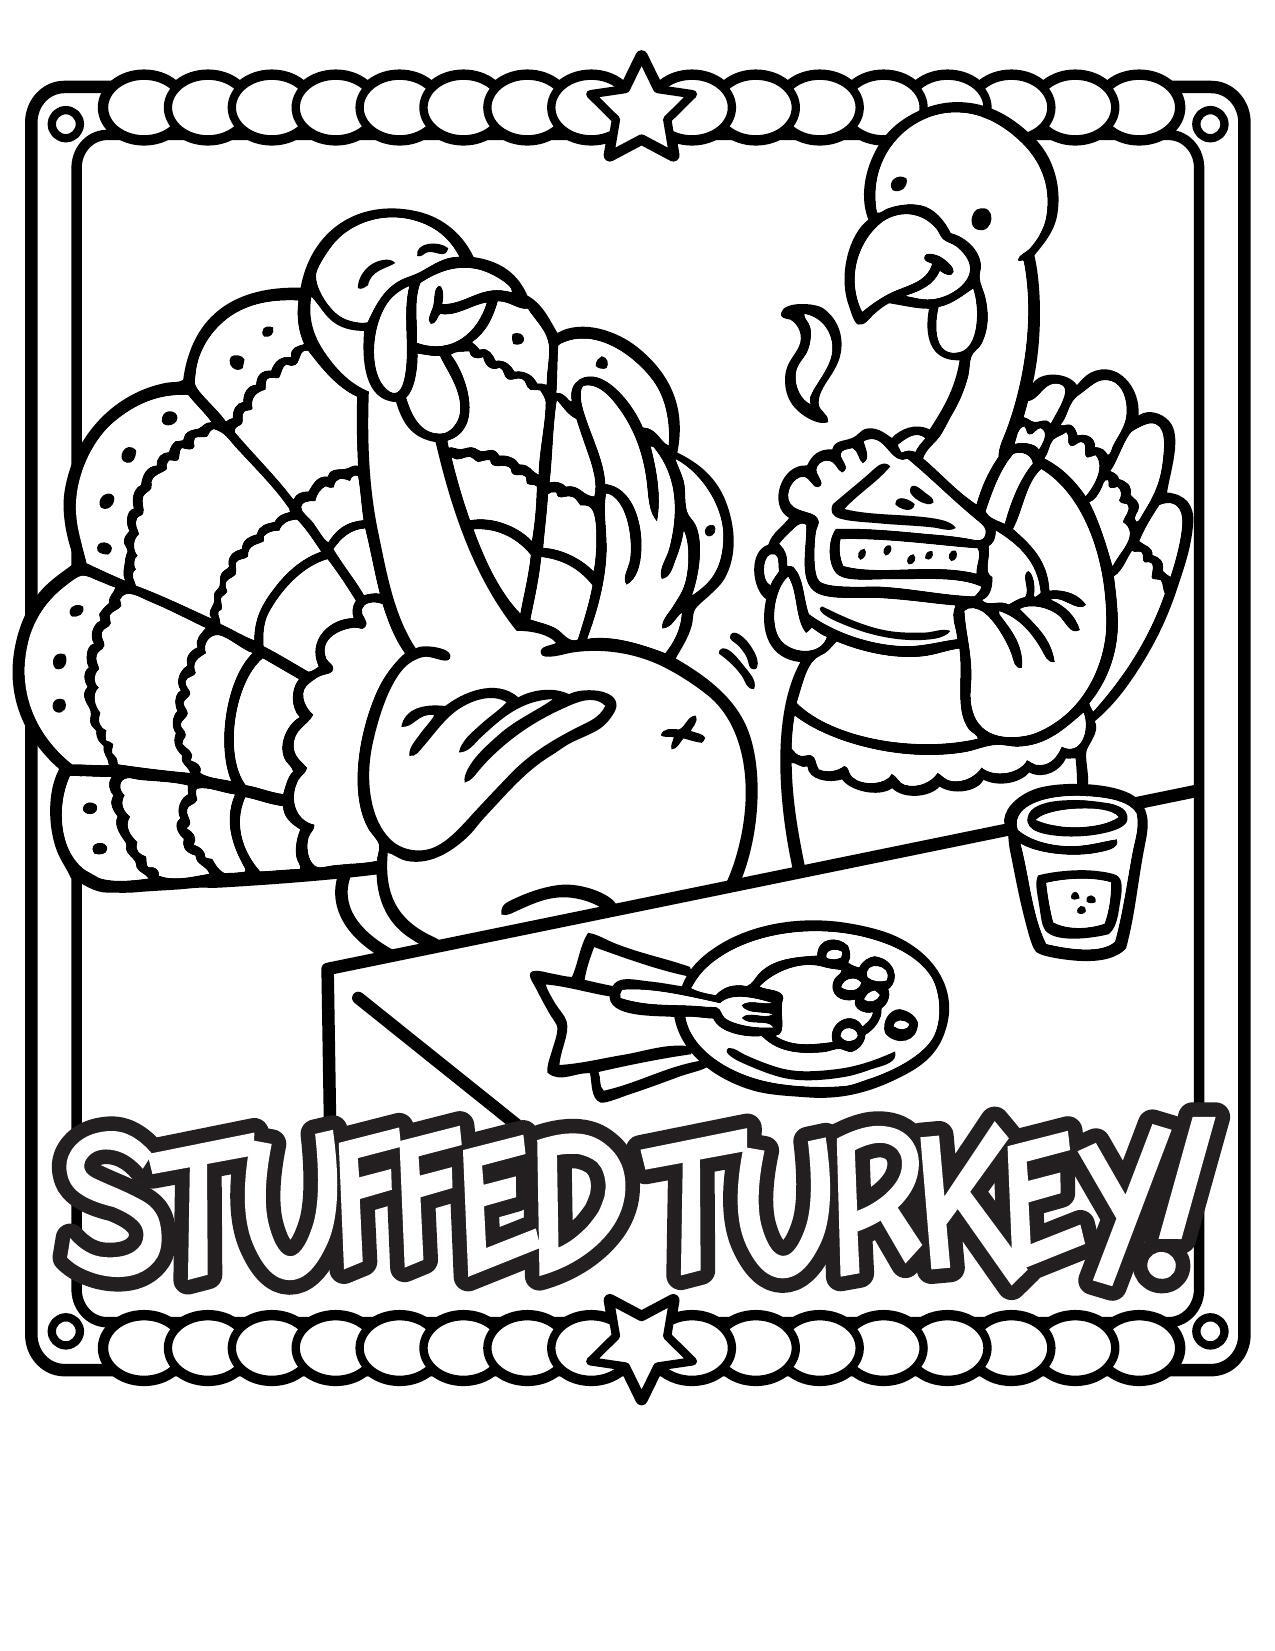 Stuffed Turkey